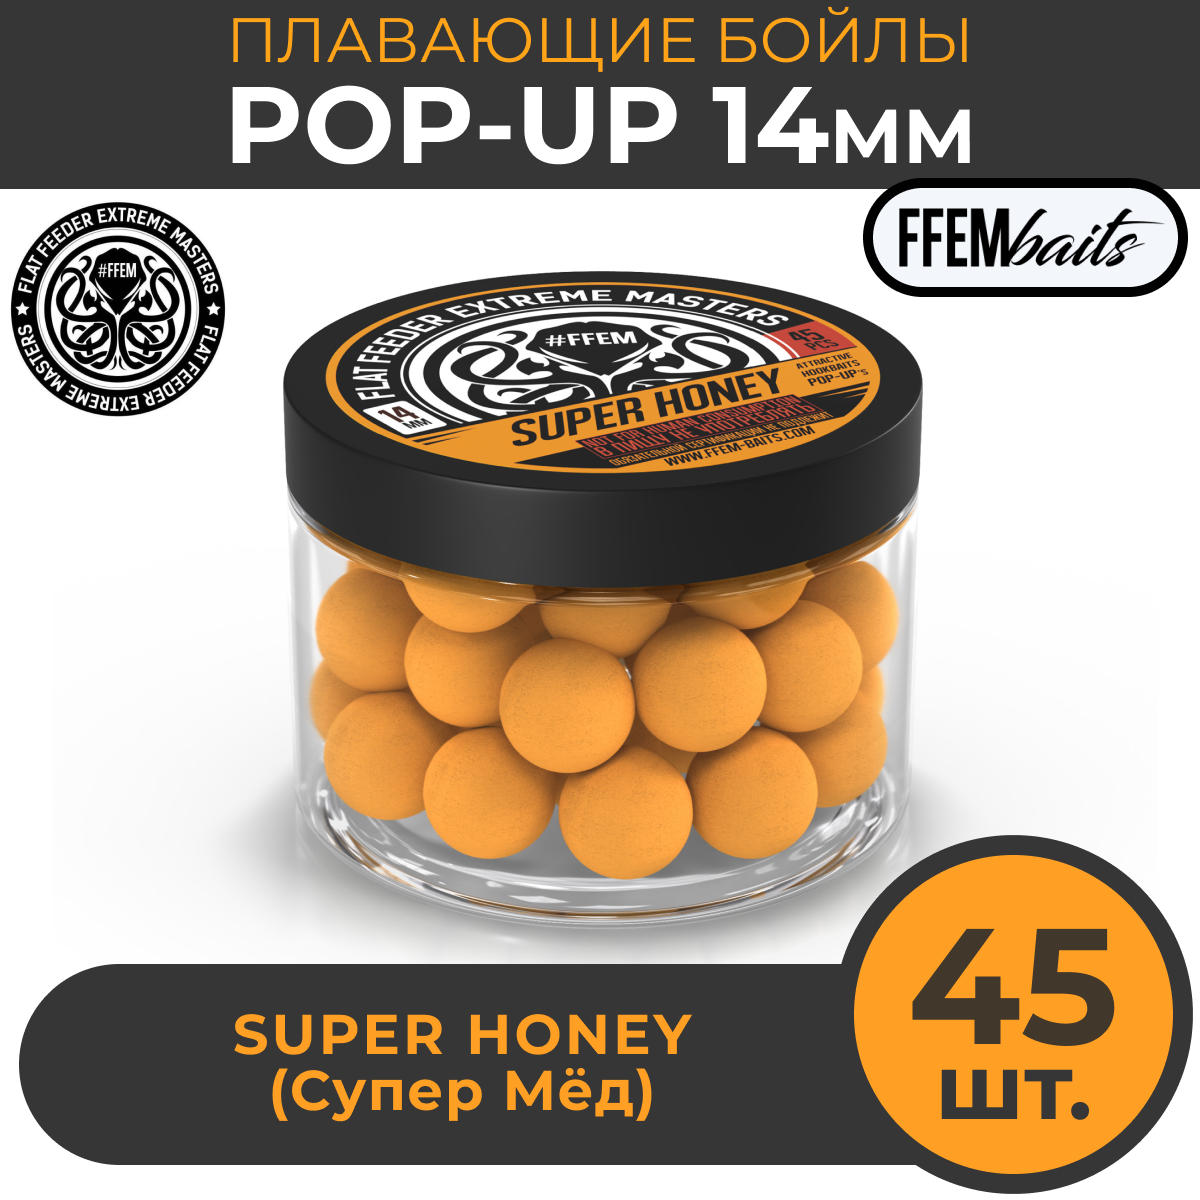 Плавающие бойлы POP-UP 14 мм Super Honey Мёд 150мл (45шт) супер аттрактивные плавающие насадочные бойлы поп-ап / FFEM Поп ап 14мм